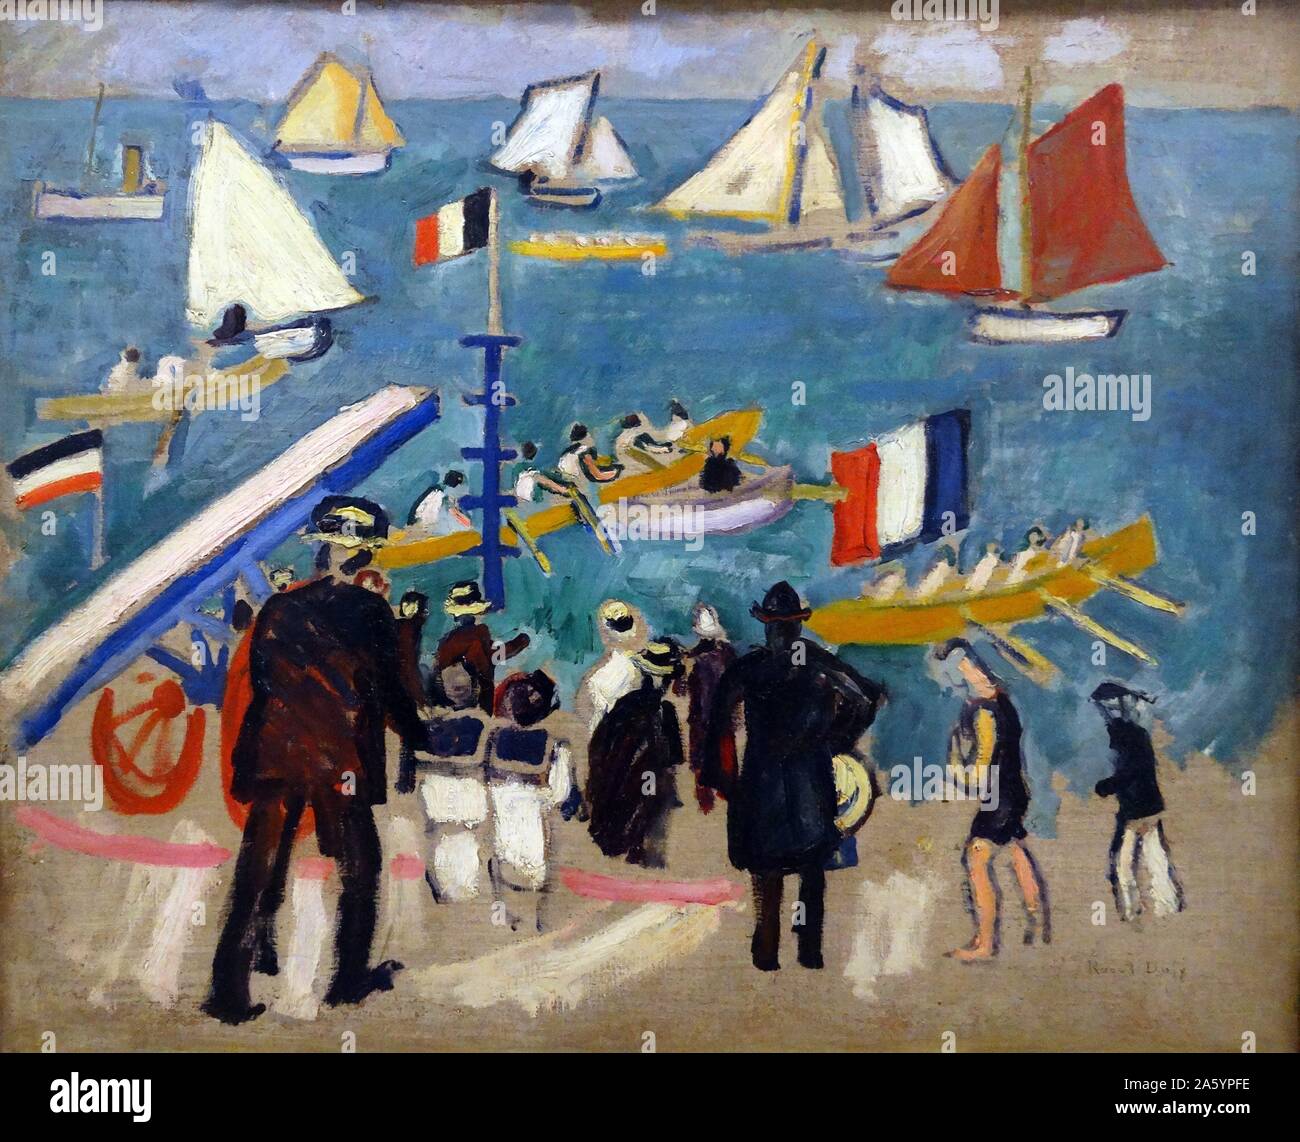 Gemälde mit dem Titel "The Regates" von Raoul Dufy (1877-1953) Französisch fauvistischen Maler. Datiert 1908 Stockfoto